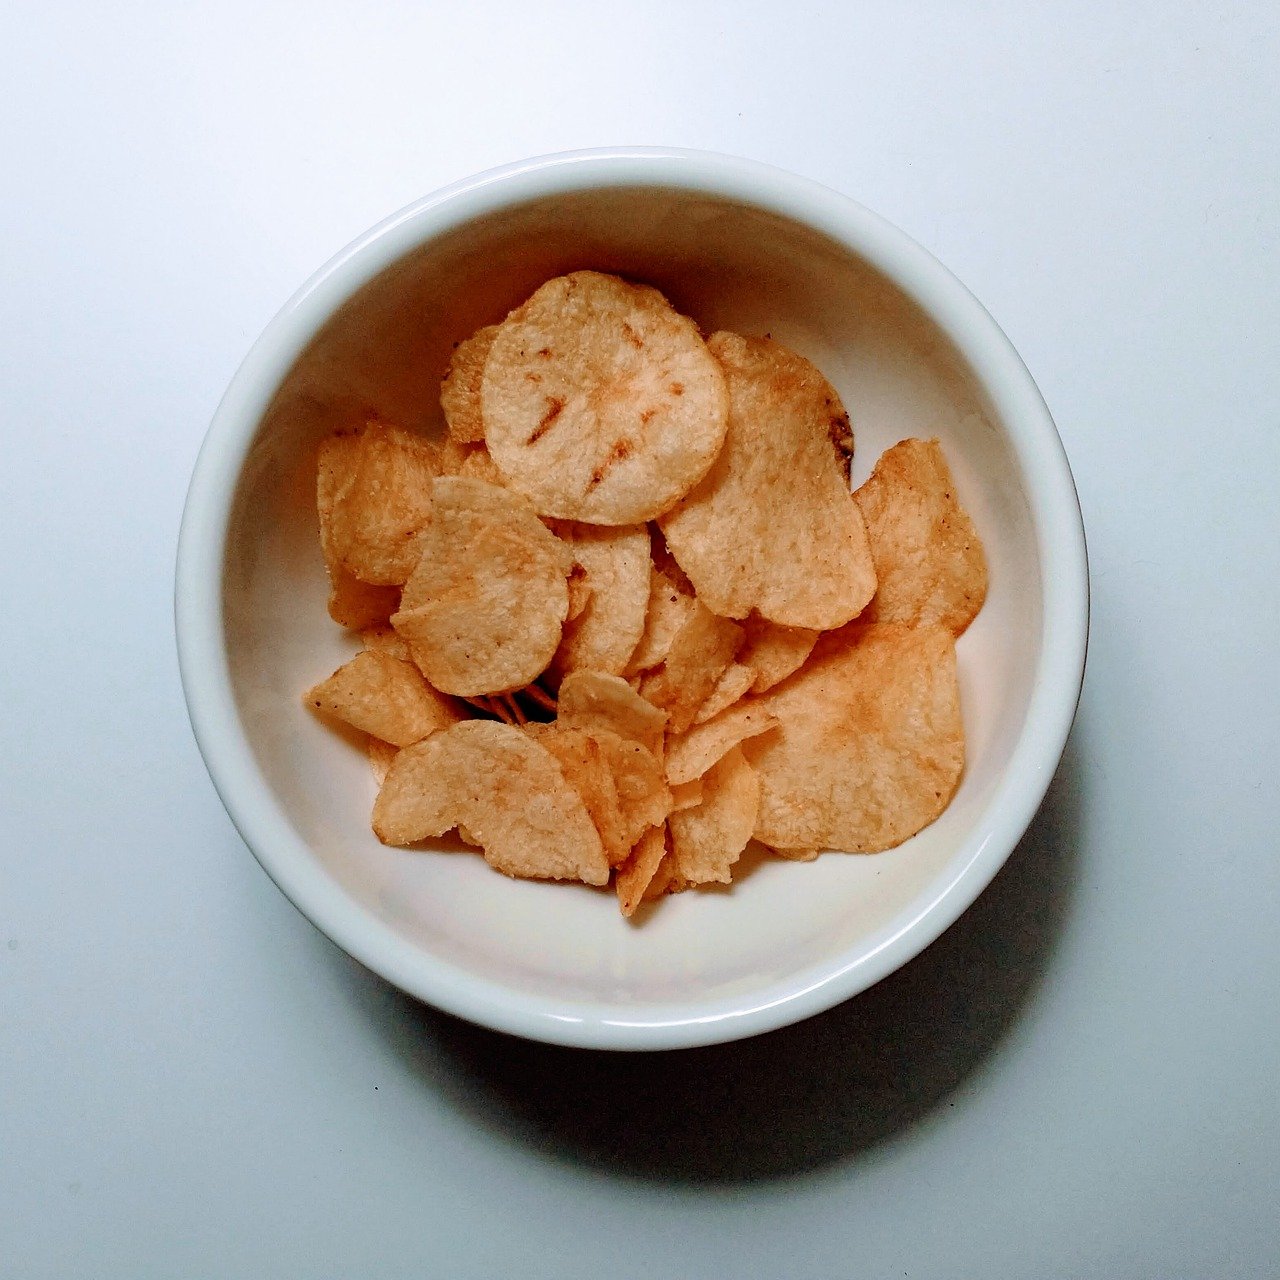 potato chips, bowl, white table-4911645.jpg